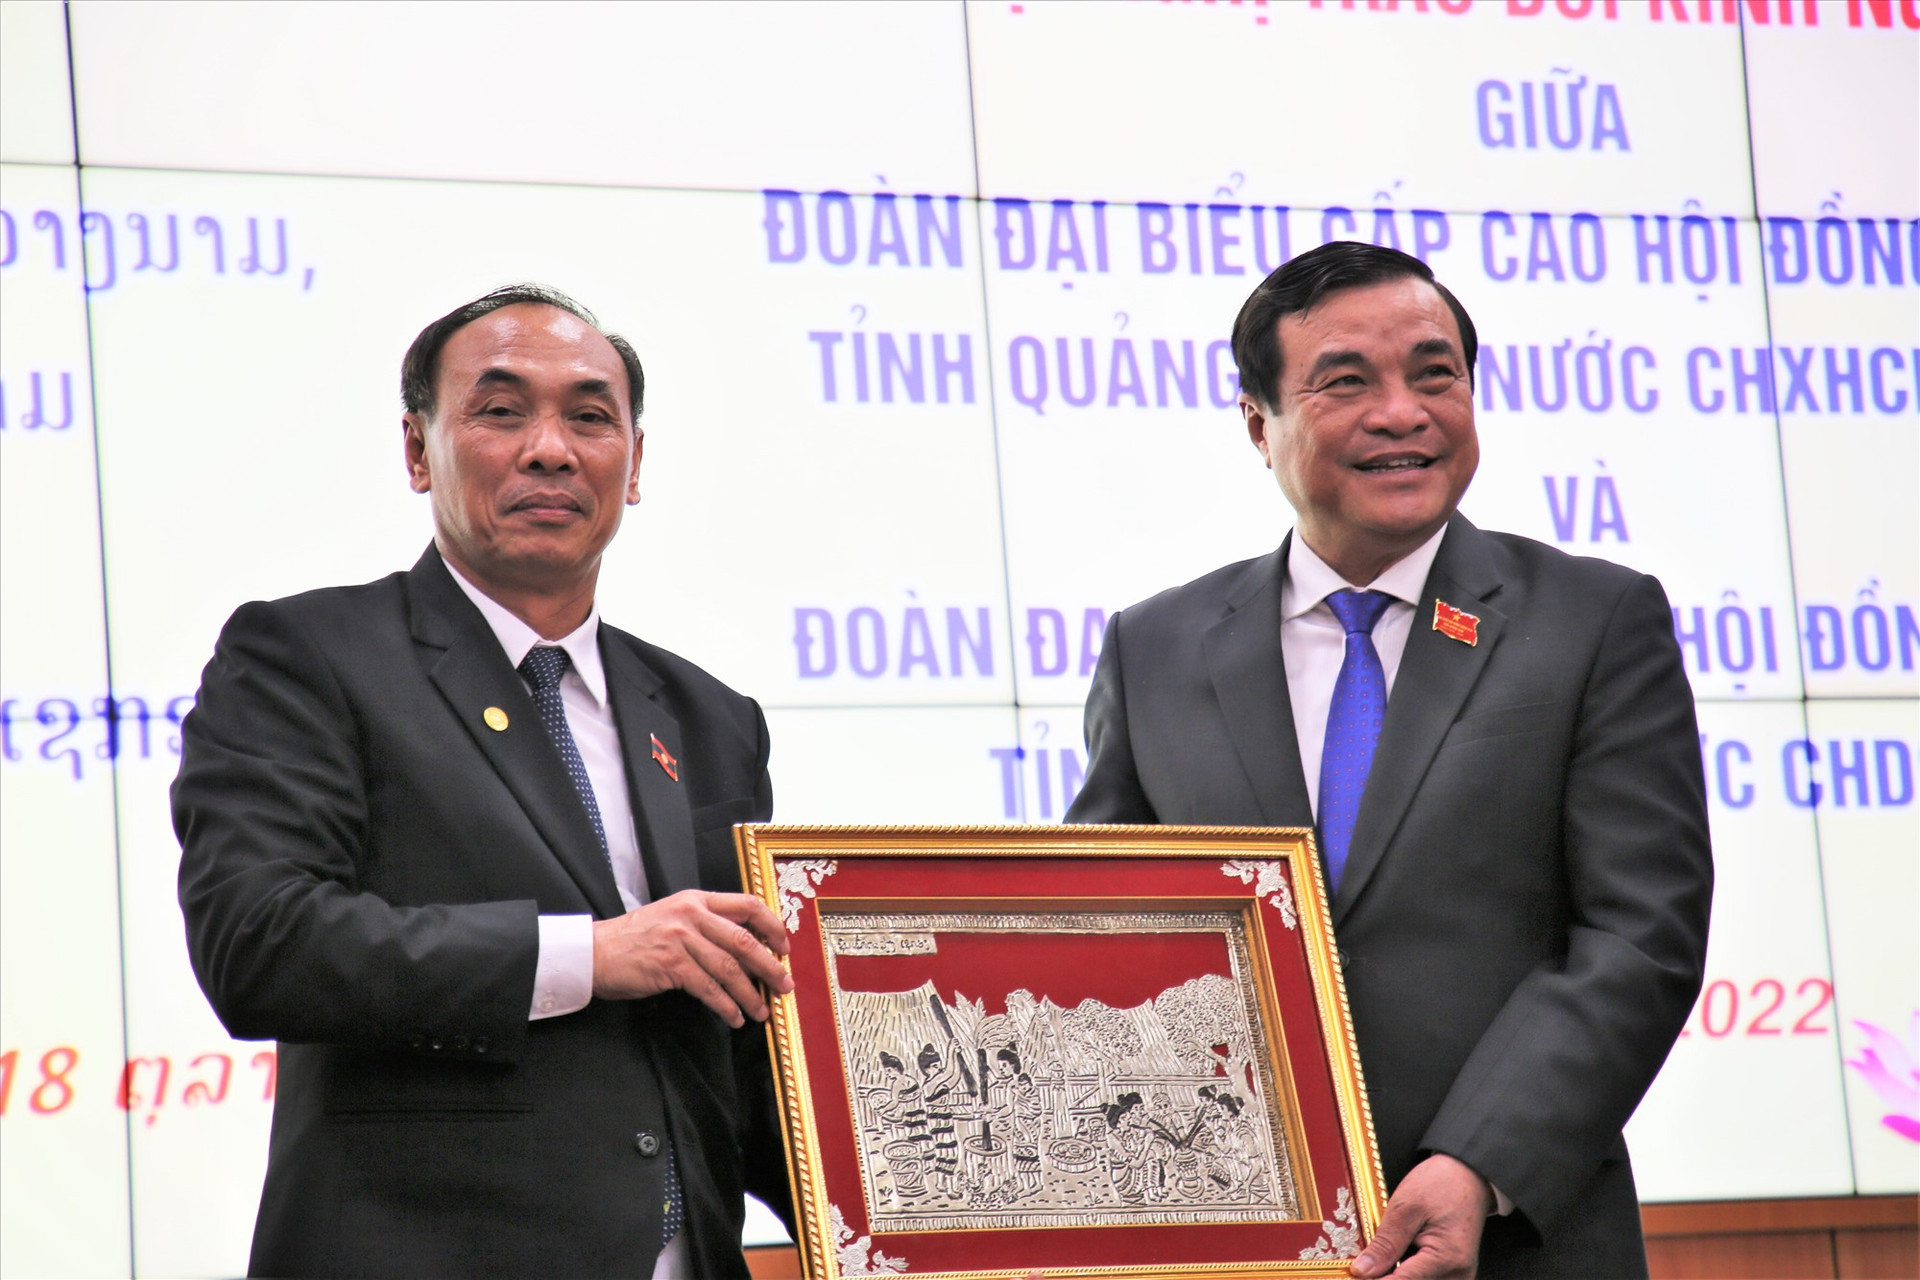 Bí thư Tỉnh ủy Phan Việt Cường (bên phải) đón nhận món quà tình cảm của đoàn đại biểu tỉnh Sê Kông. Ảnh: A.N